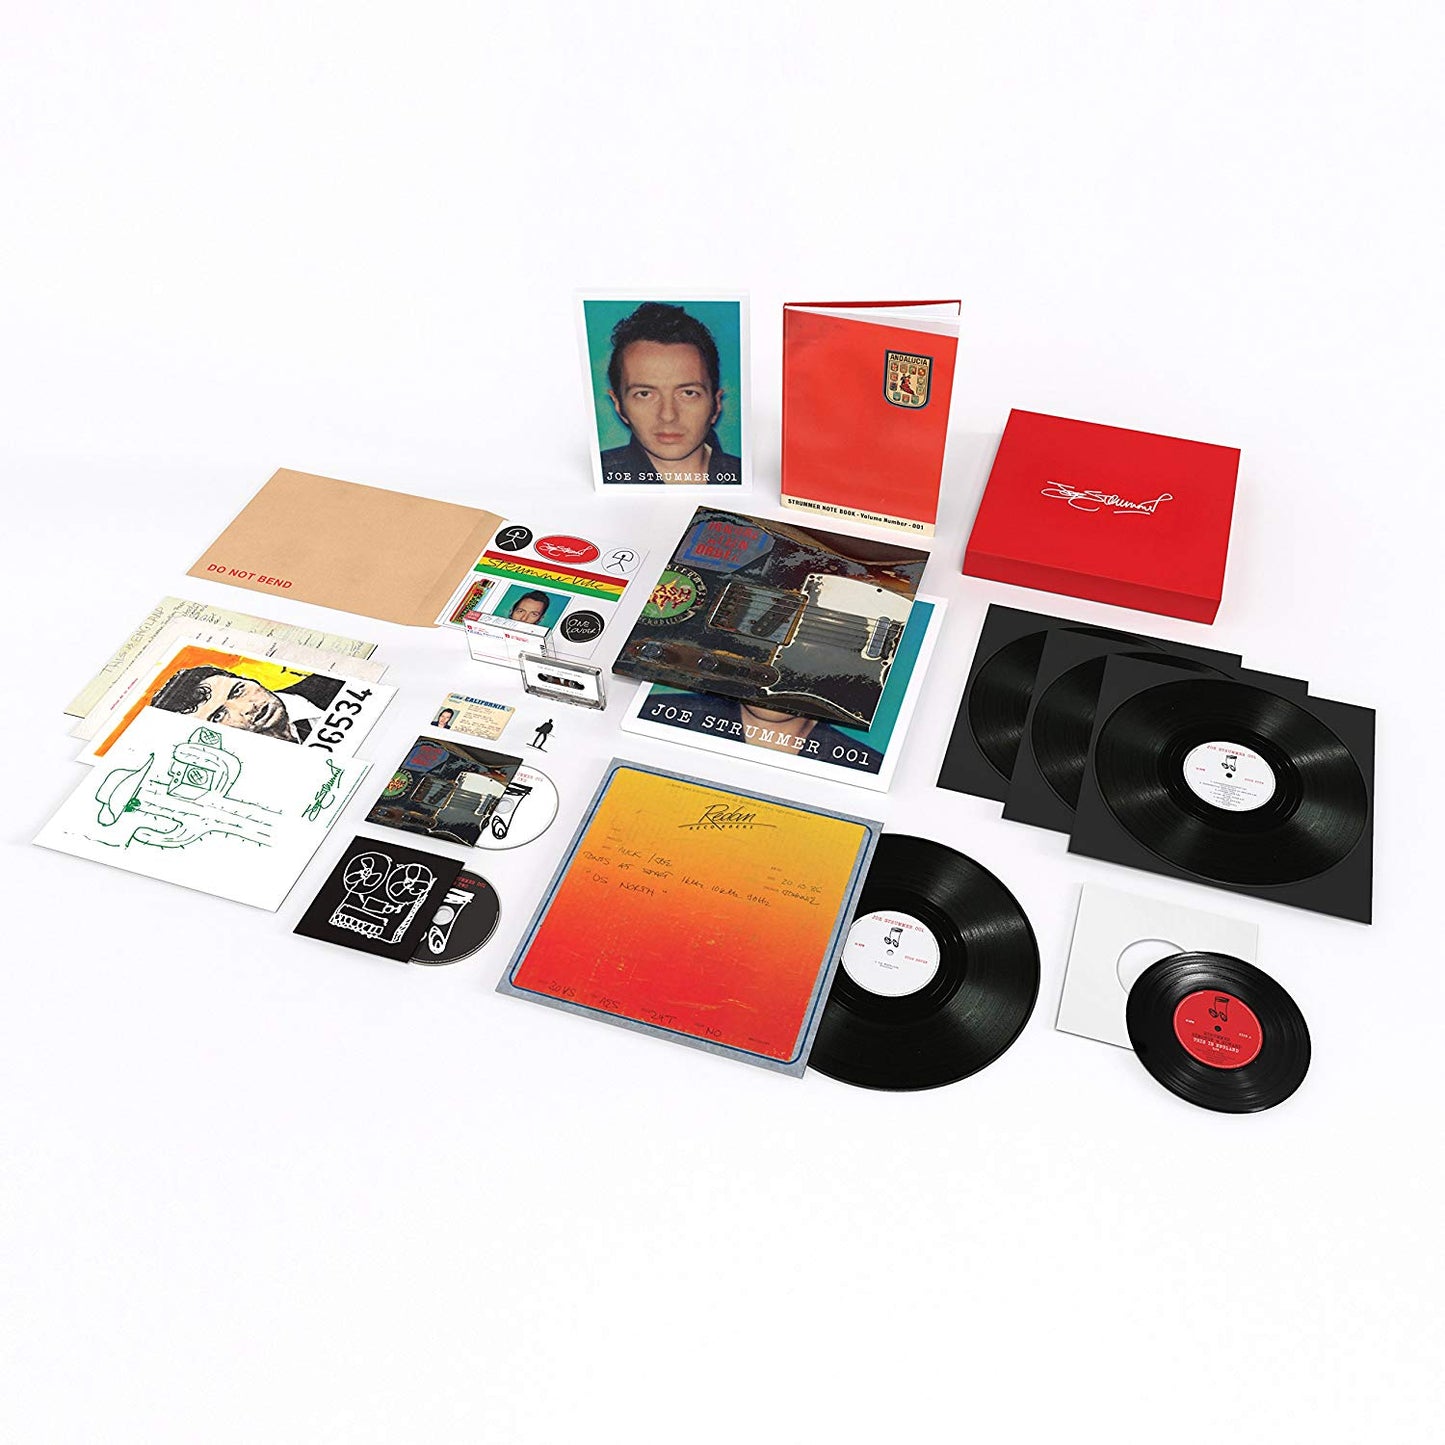 Joe Strummer - 001 Deluxe Box